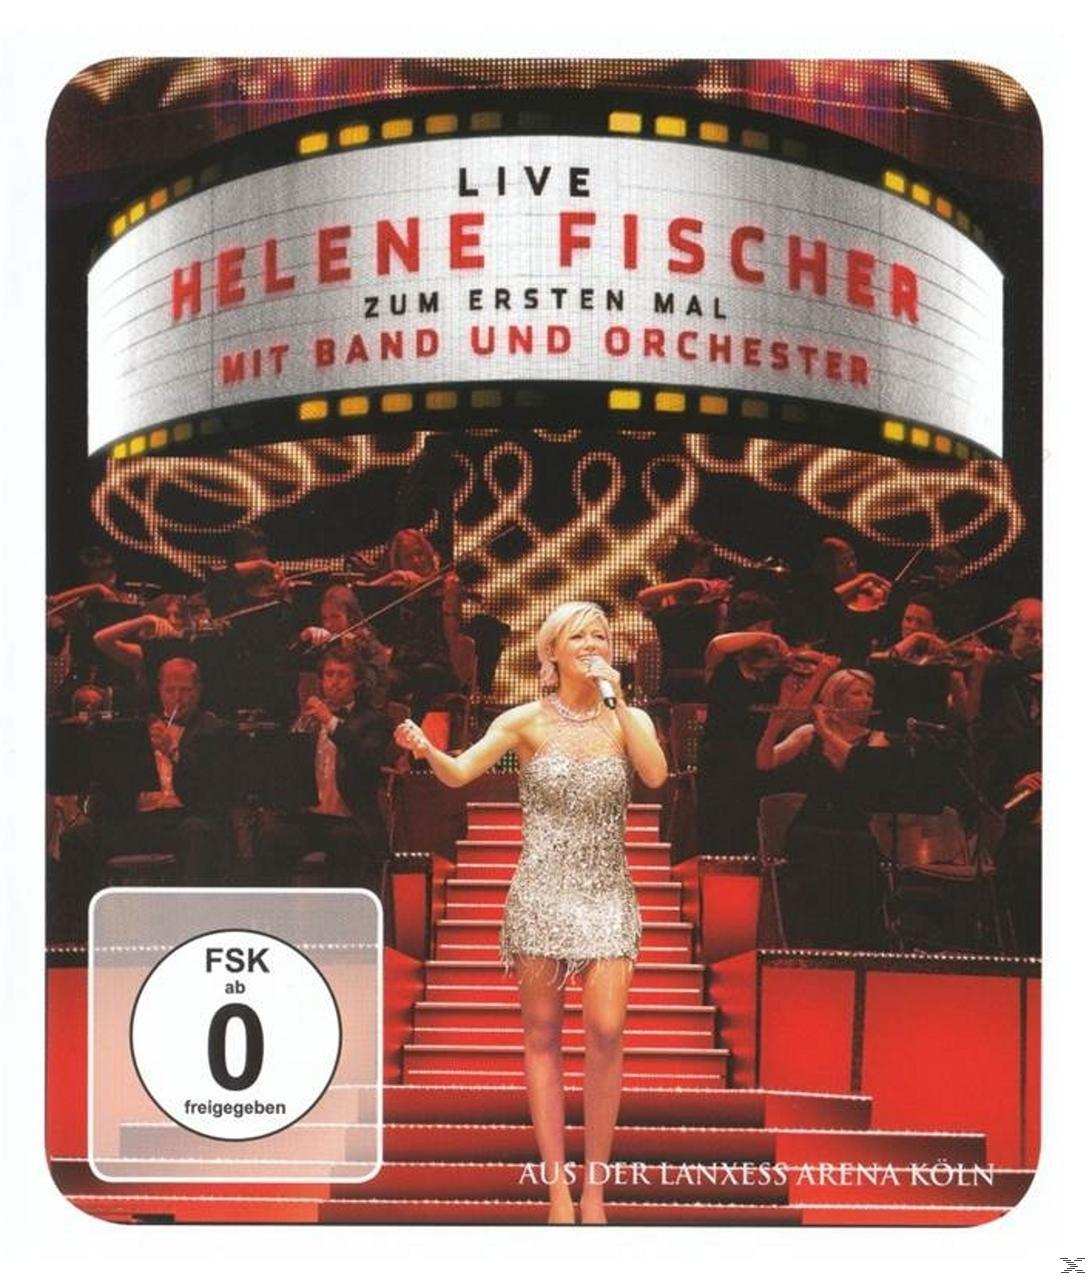 & Fischer - Band Live-Helene Mal Fischer-Zum Helene Ersten Orch - (Blu-ray) Mit